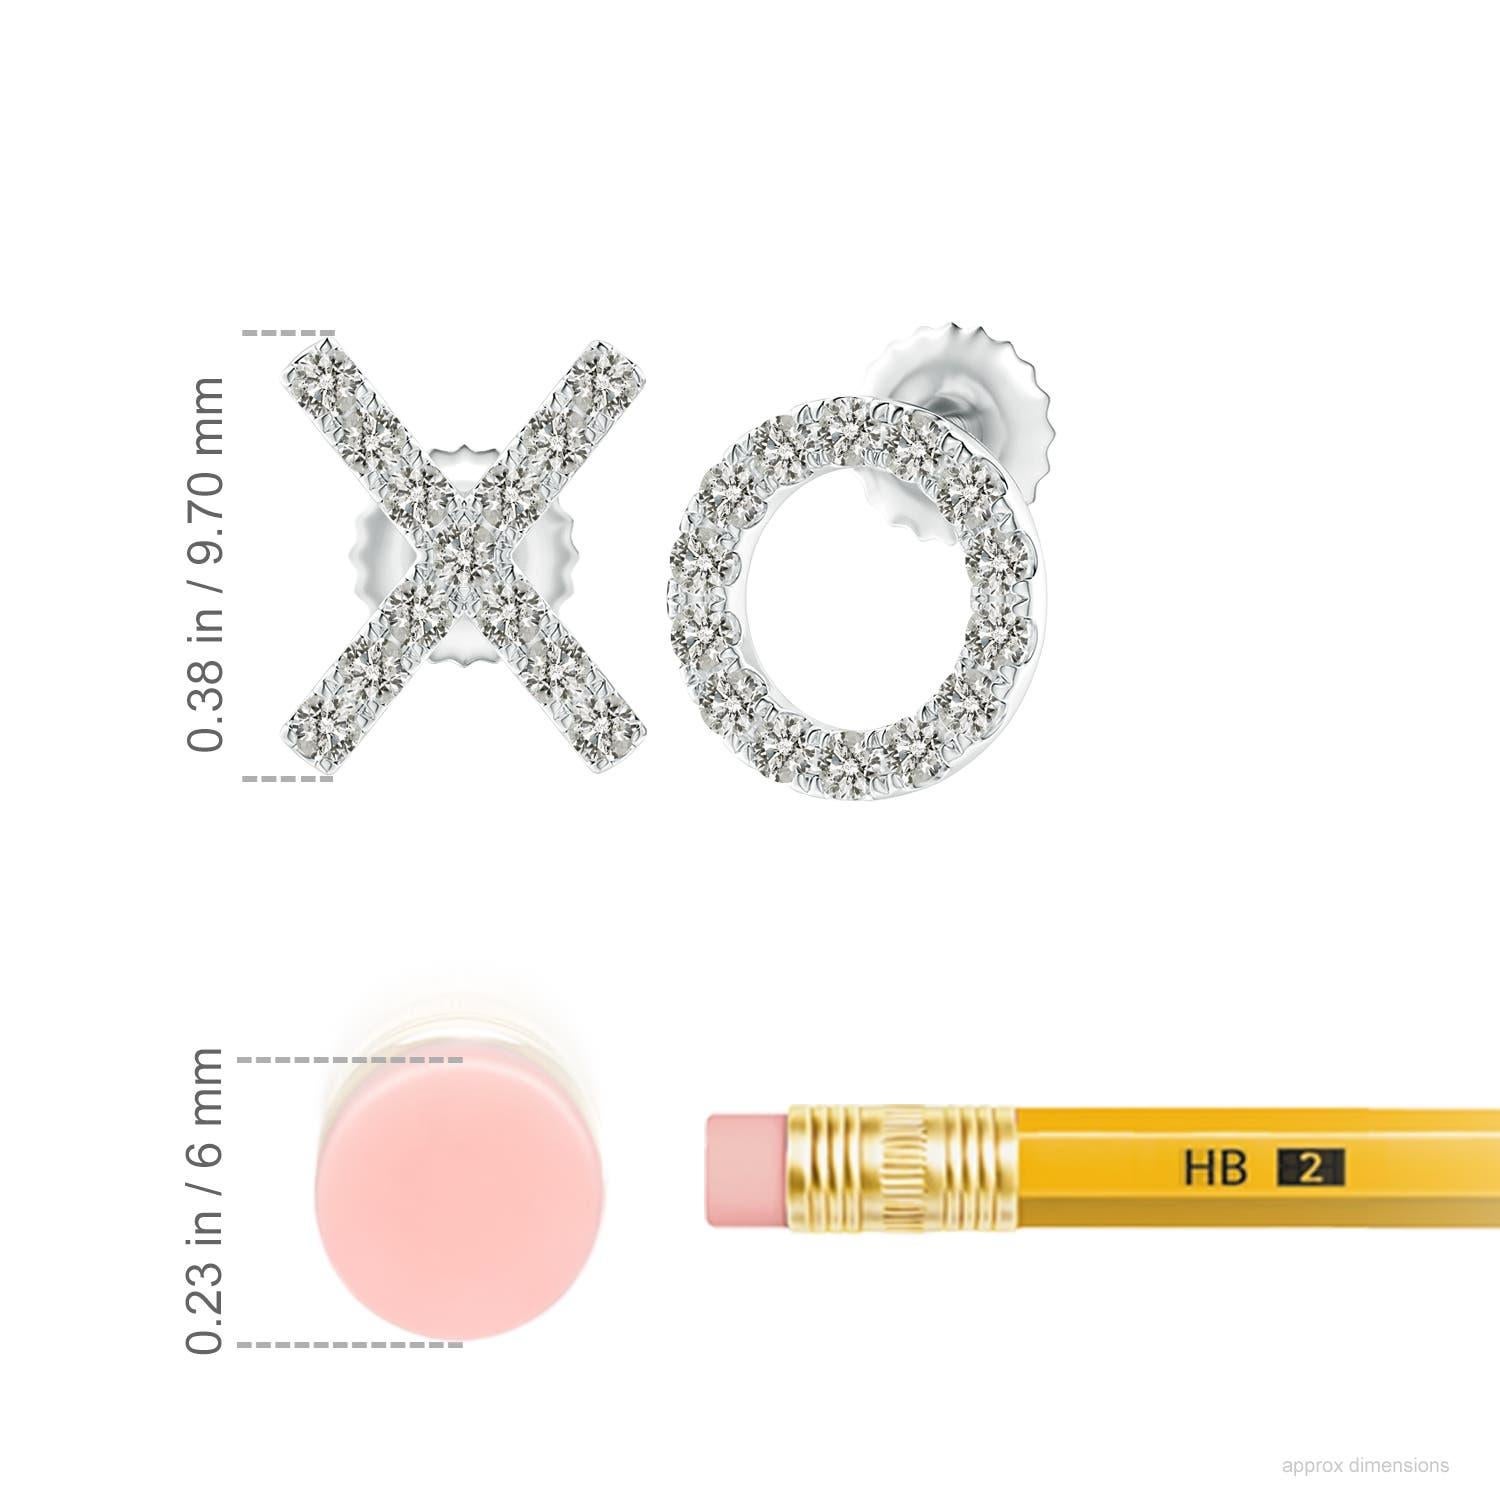 Die aus Platin gefertigten XO-Ohrstecker sind einfach faszinierend. Funkelnde runde Diamanten in einer U-Pava-Fassung schmücken das XO-Muster und verleihen diesen bezaubernden Ohrsteckern eine schillernde Note.
Der Diamant ist der Geburtsstein des